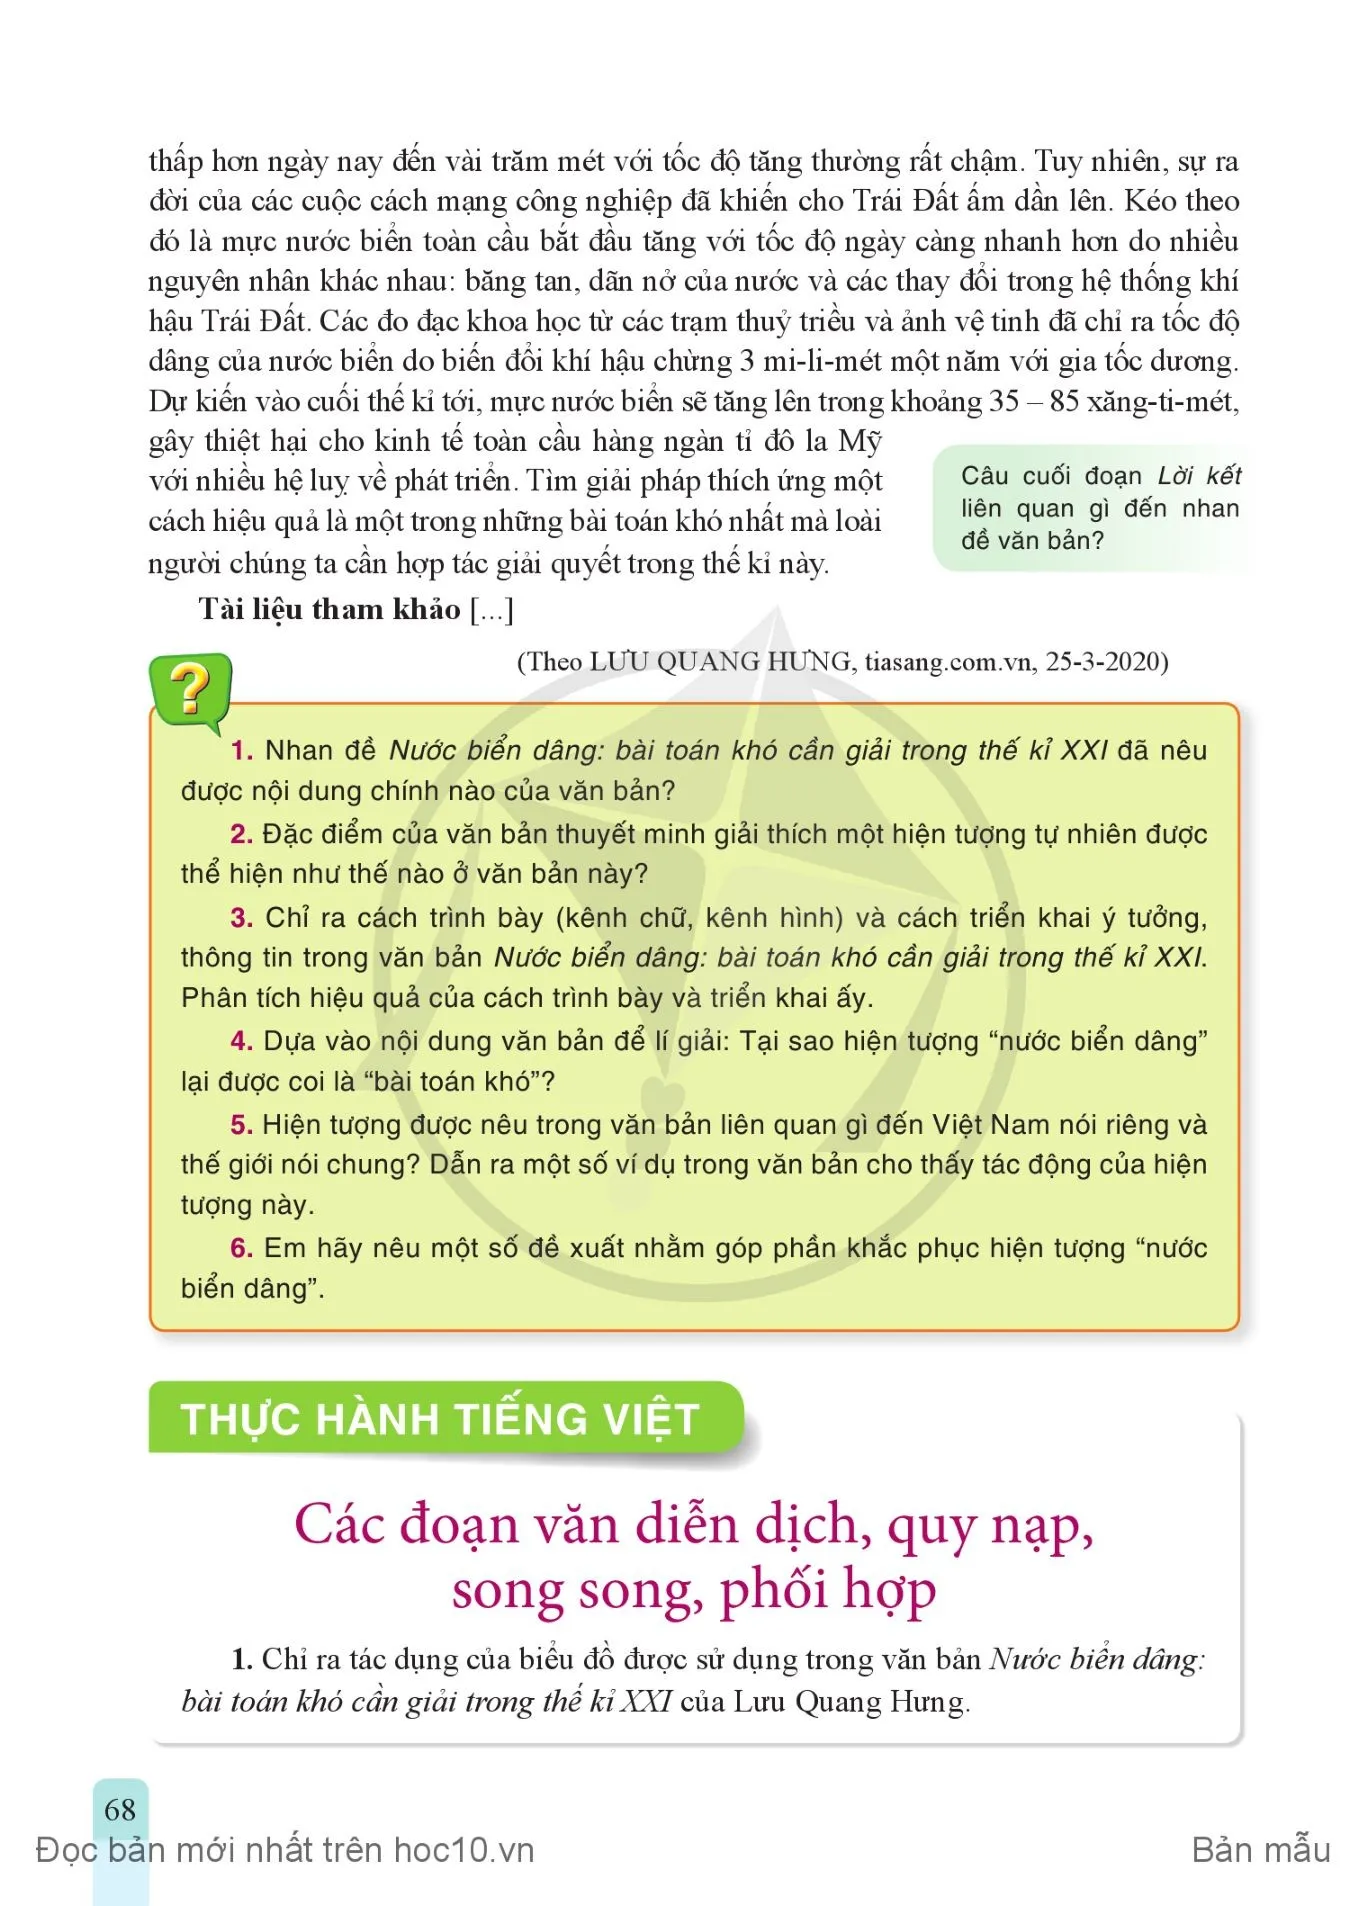 • Thực hành tiếng Việt: Các đoạn văn diễn dịch, quy nạp, song song, phối hợp